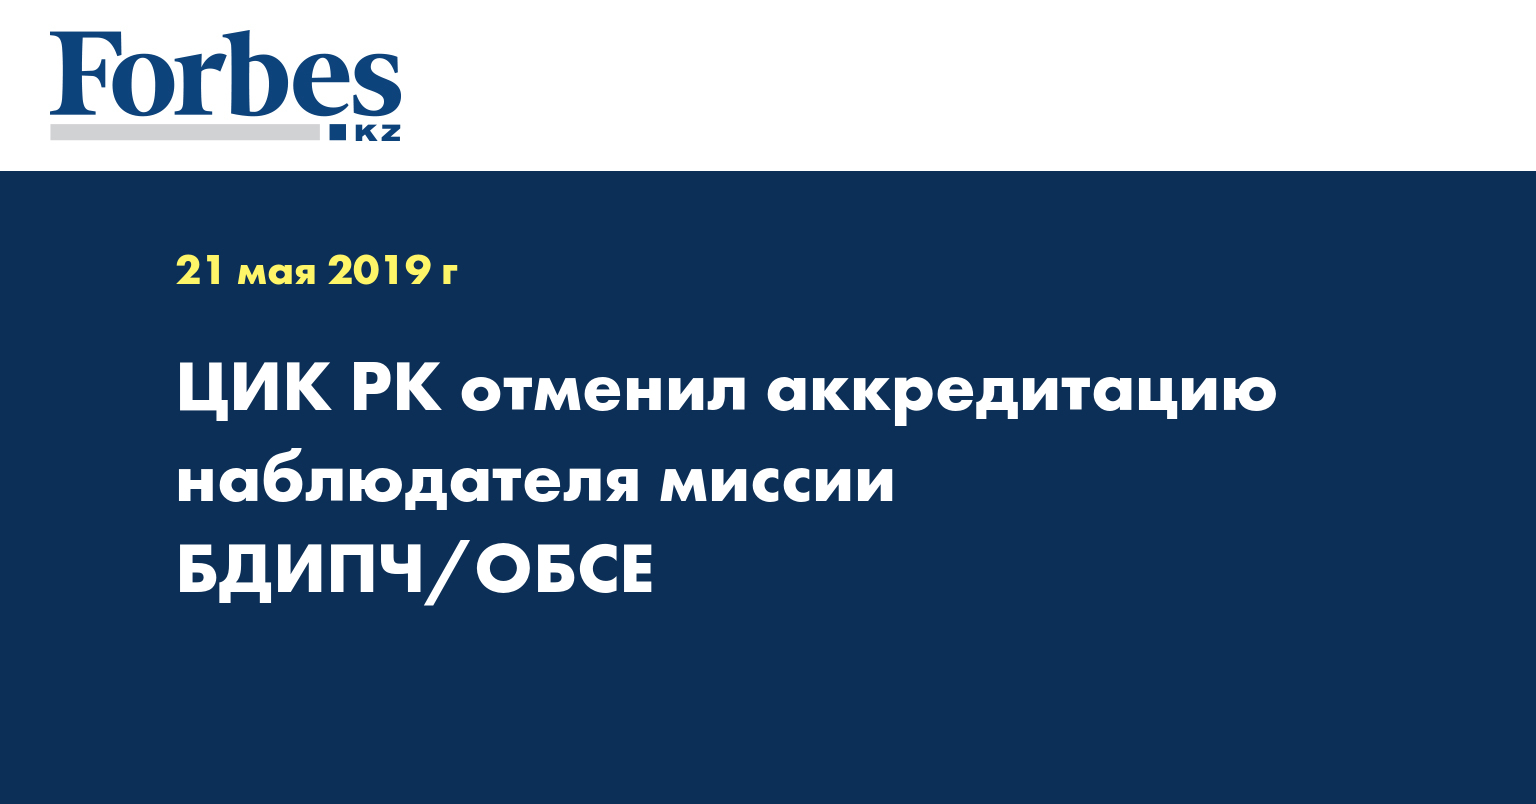 ЦИК РК отменил аккредитацию наблюдателя миссии БДИПЧ/ОБСЕ